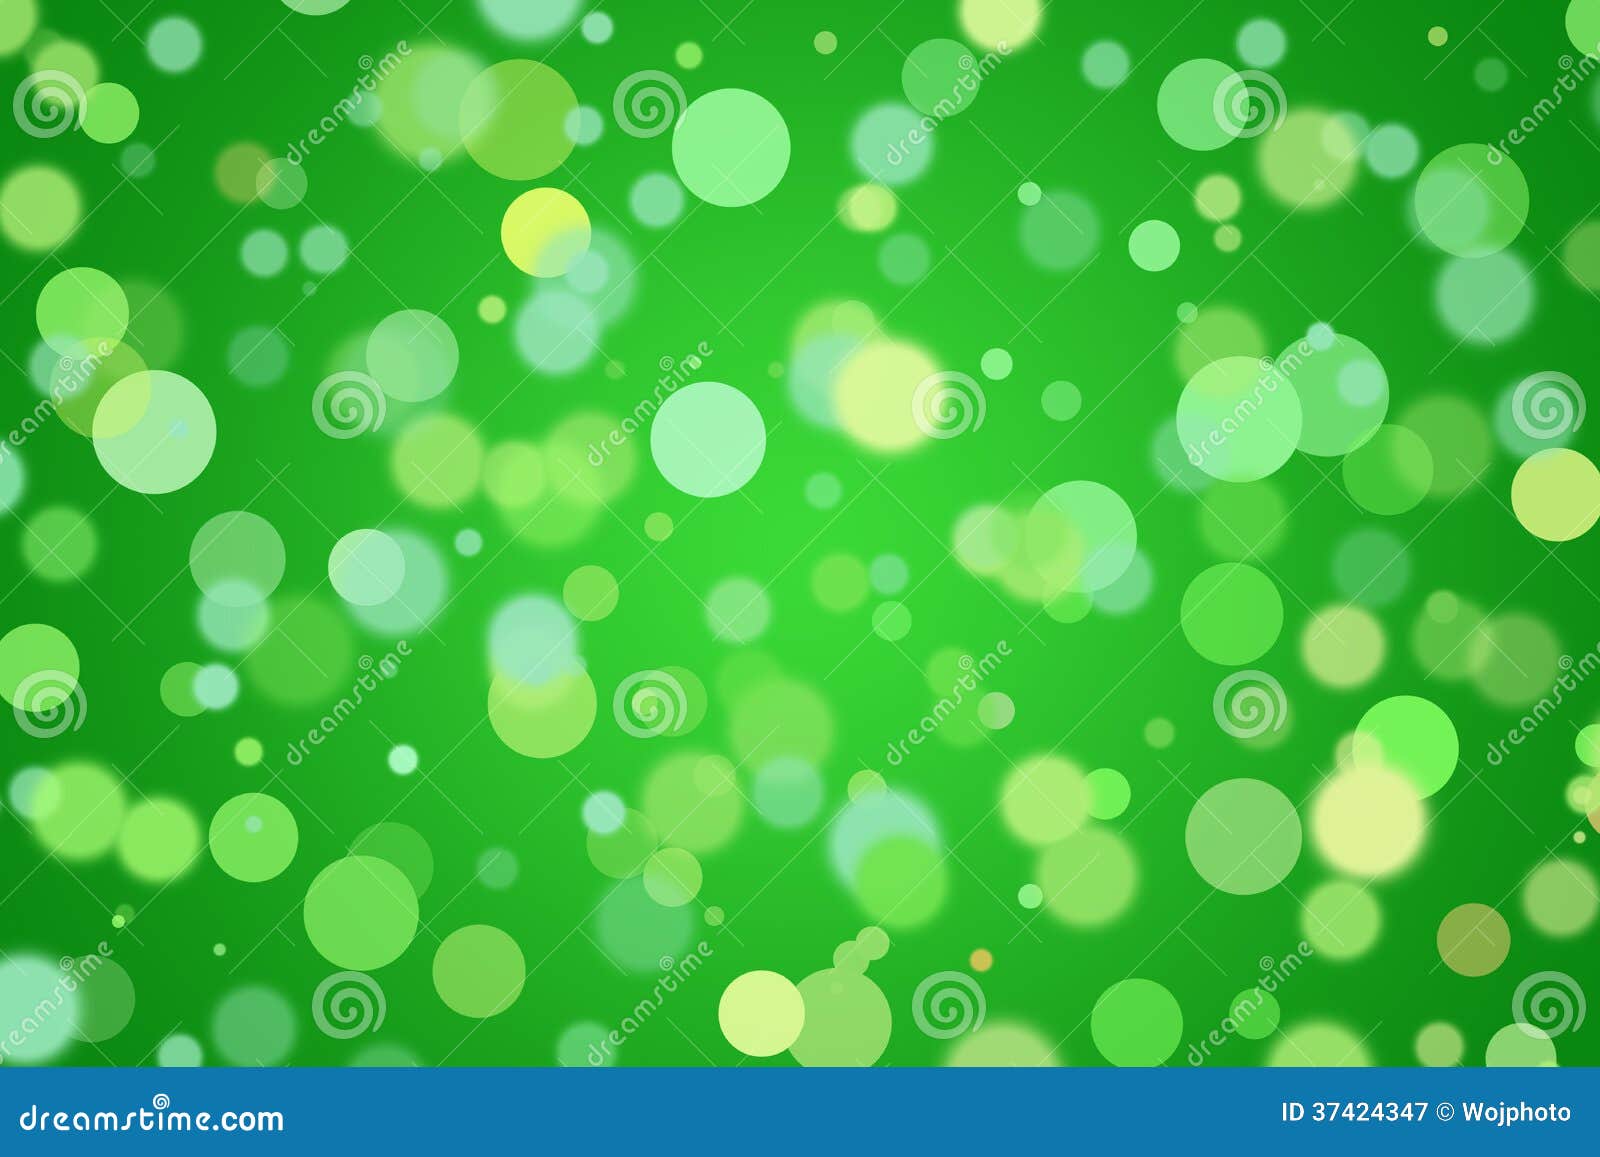 Tận hưởng cảm giác nhẹ nhàng và tươi mới của những bong bóng màu xanh lá cây trong hình ảnh này!